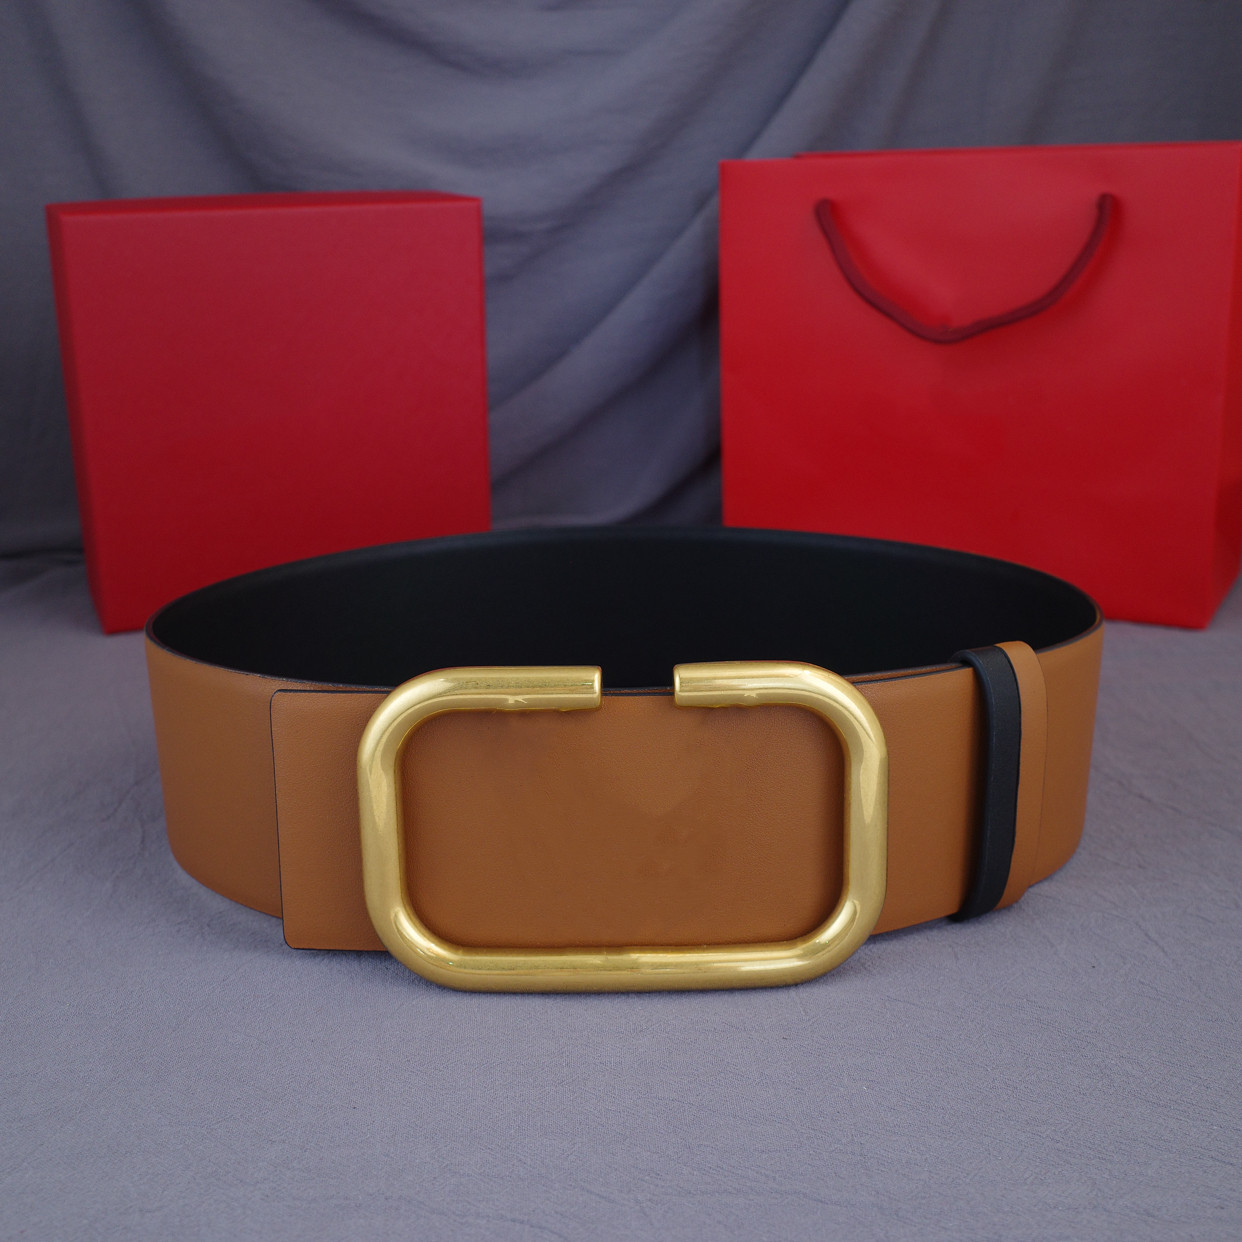 2022 Moda Hombres Clásicos Diseñadores Cinturones Para Mujer Para Hombre Carta Casual Hebilla Lisa Cinturón Ancho 7 0 cm con caja Sin carga283m